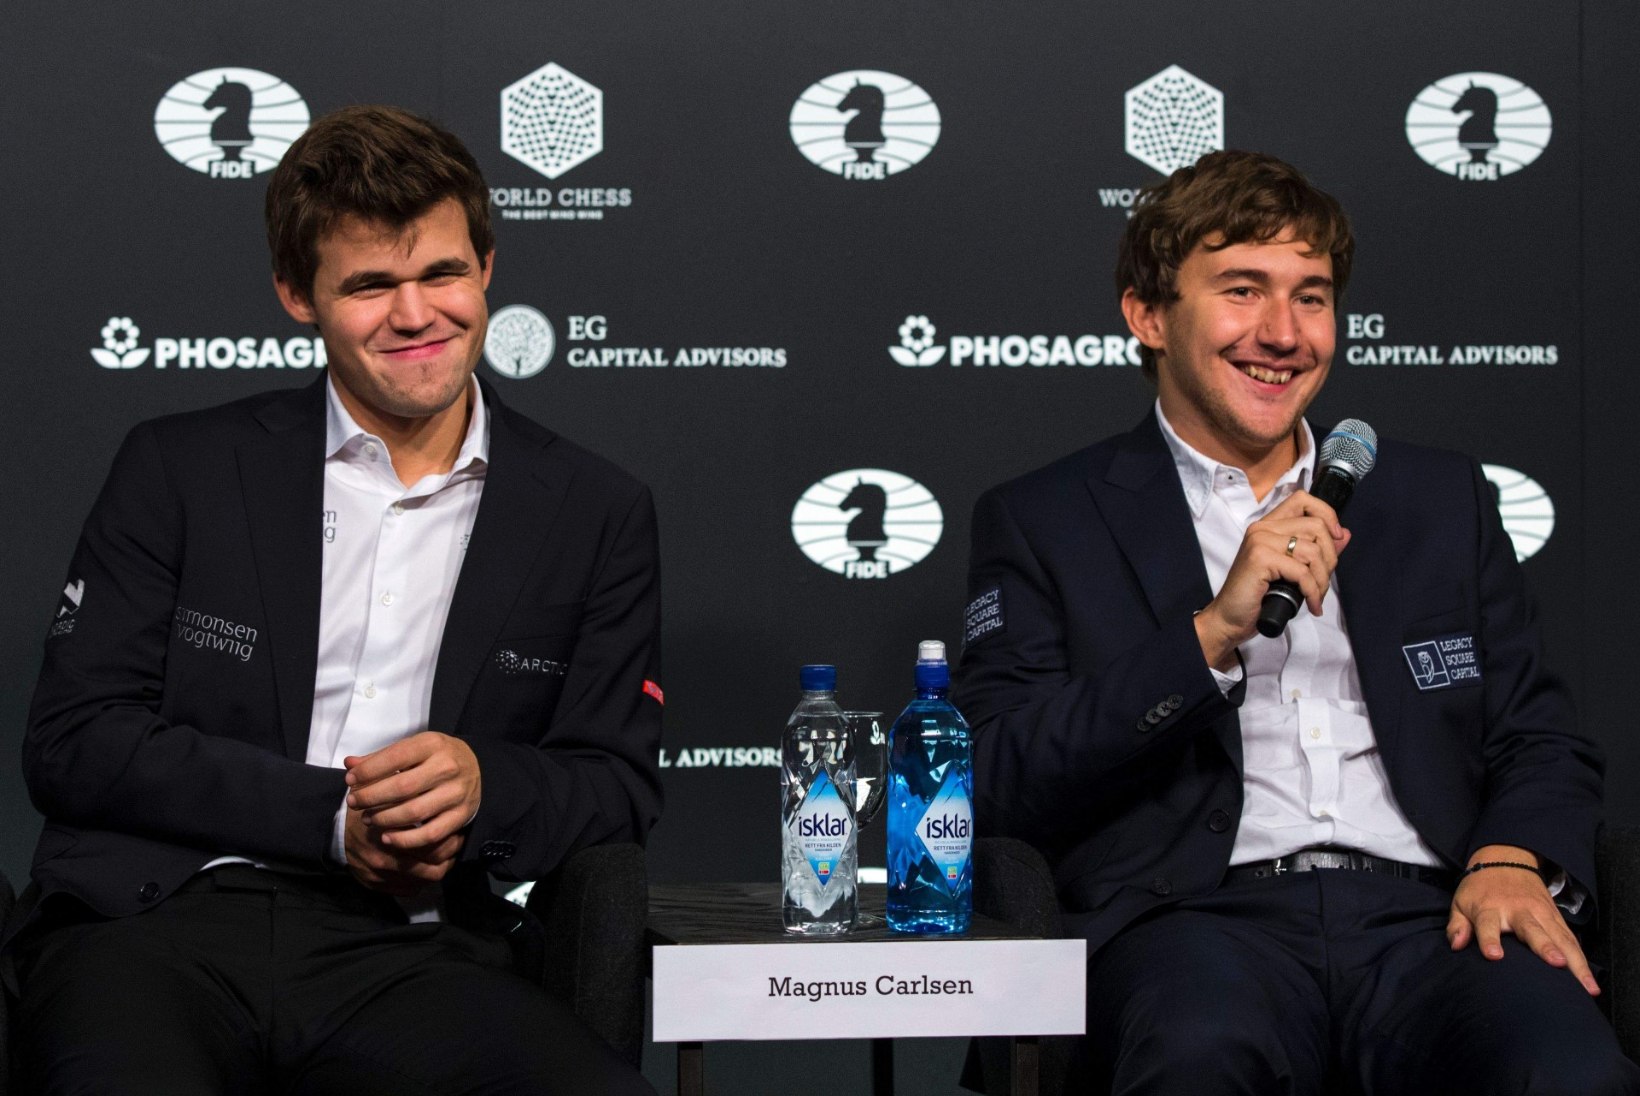 MM-tiitlit kaitsnud Magnus Carlsen kui male-Barcelona ja kiirmale kui jalgpalli lisaaeg